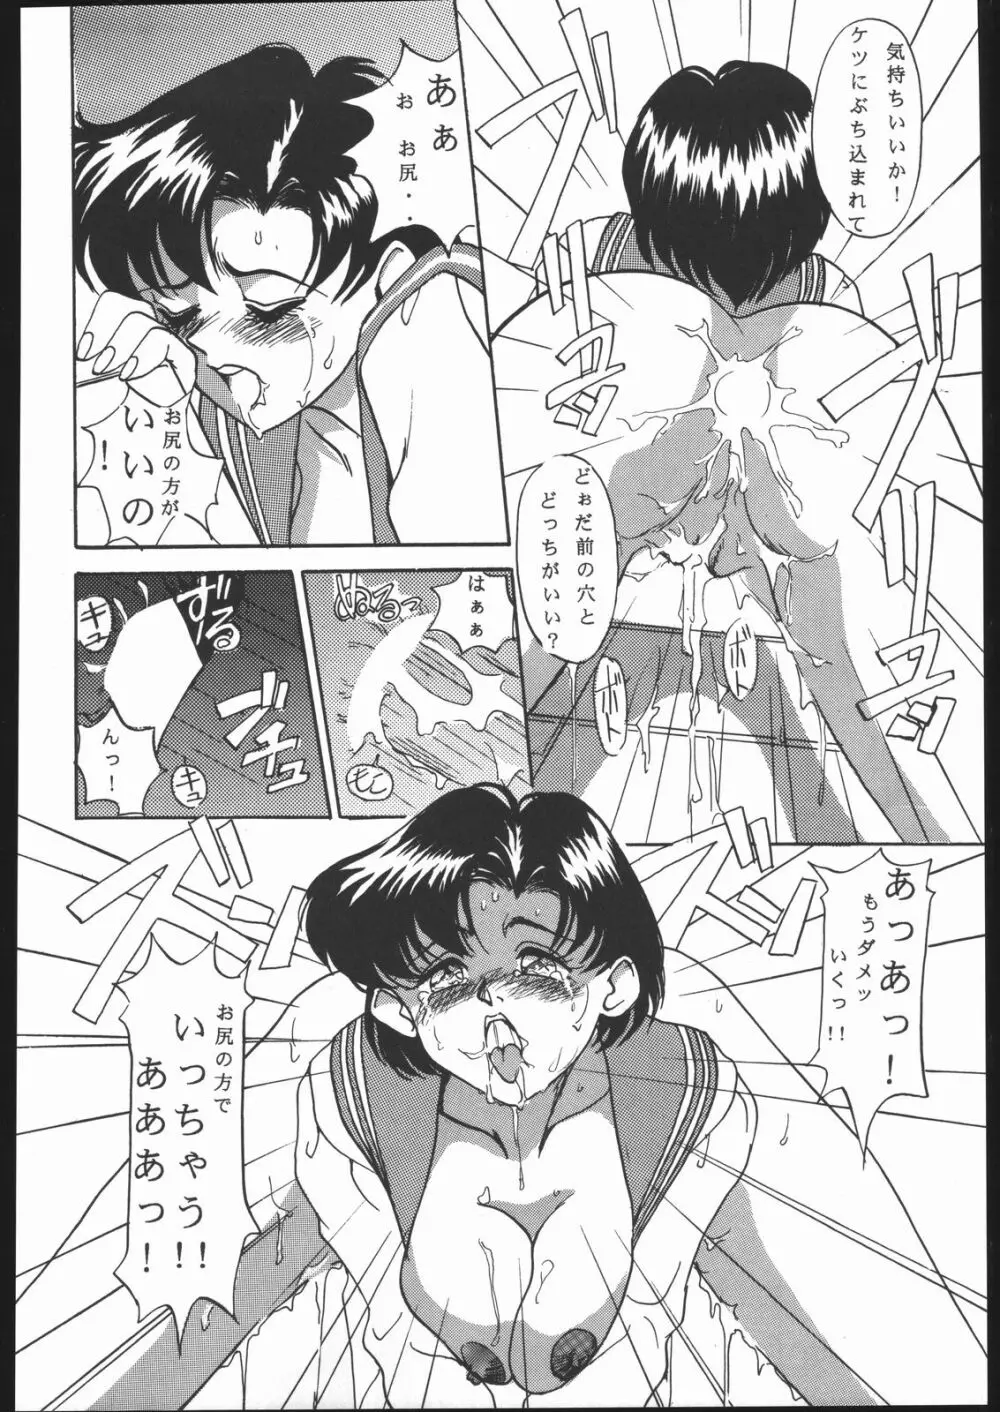 KATZE 7 上巻 - page15